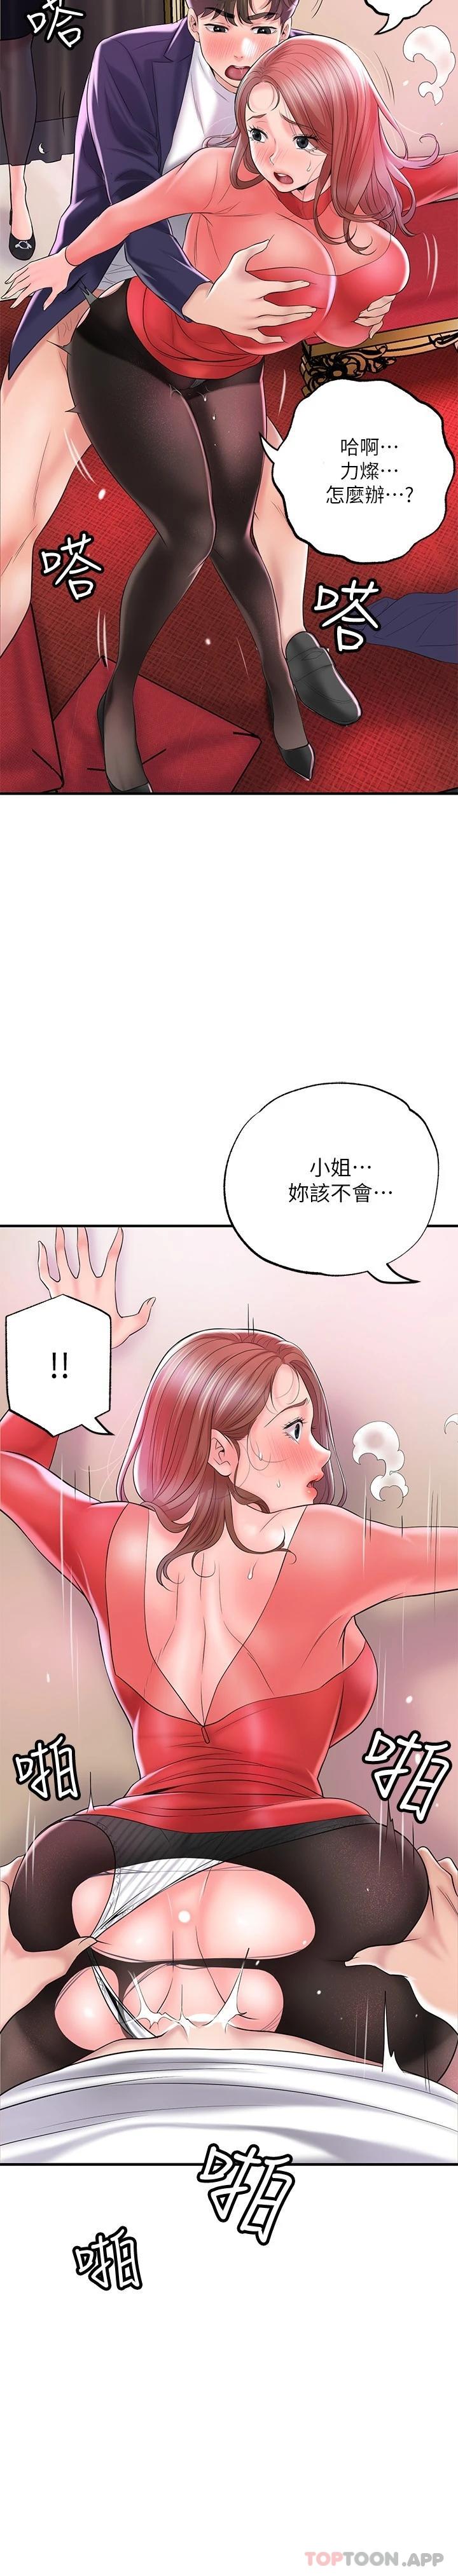 韩国污漫画 幸福督市 第74话 你不是喜欢被顶很深吗? 12